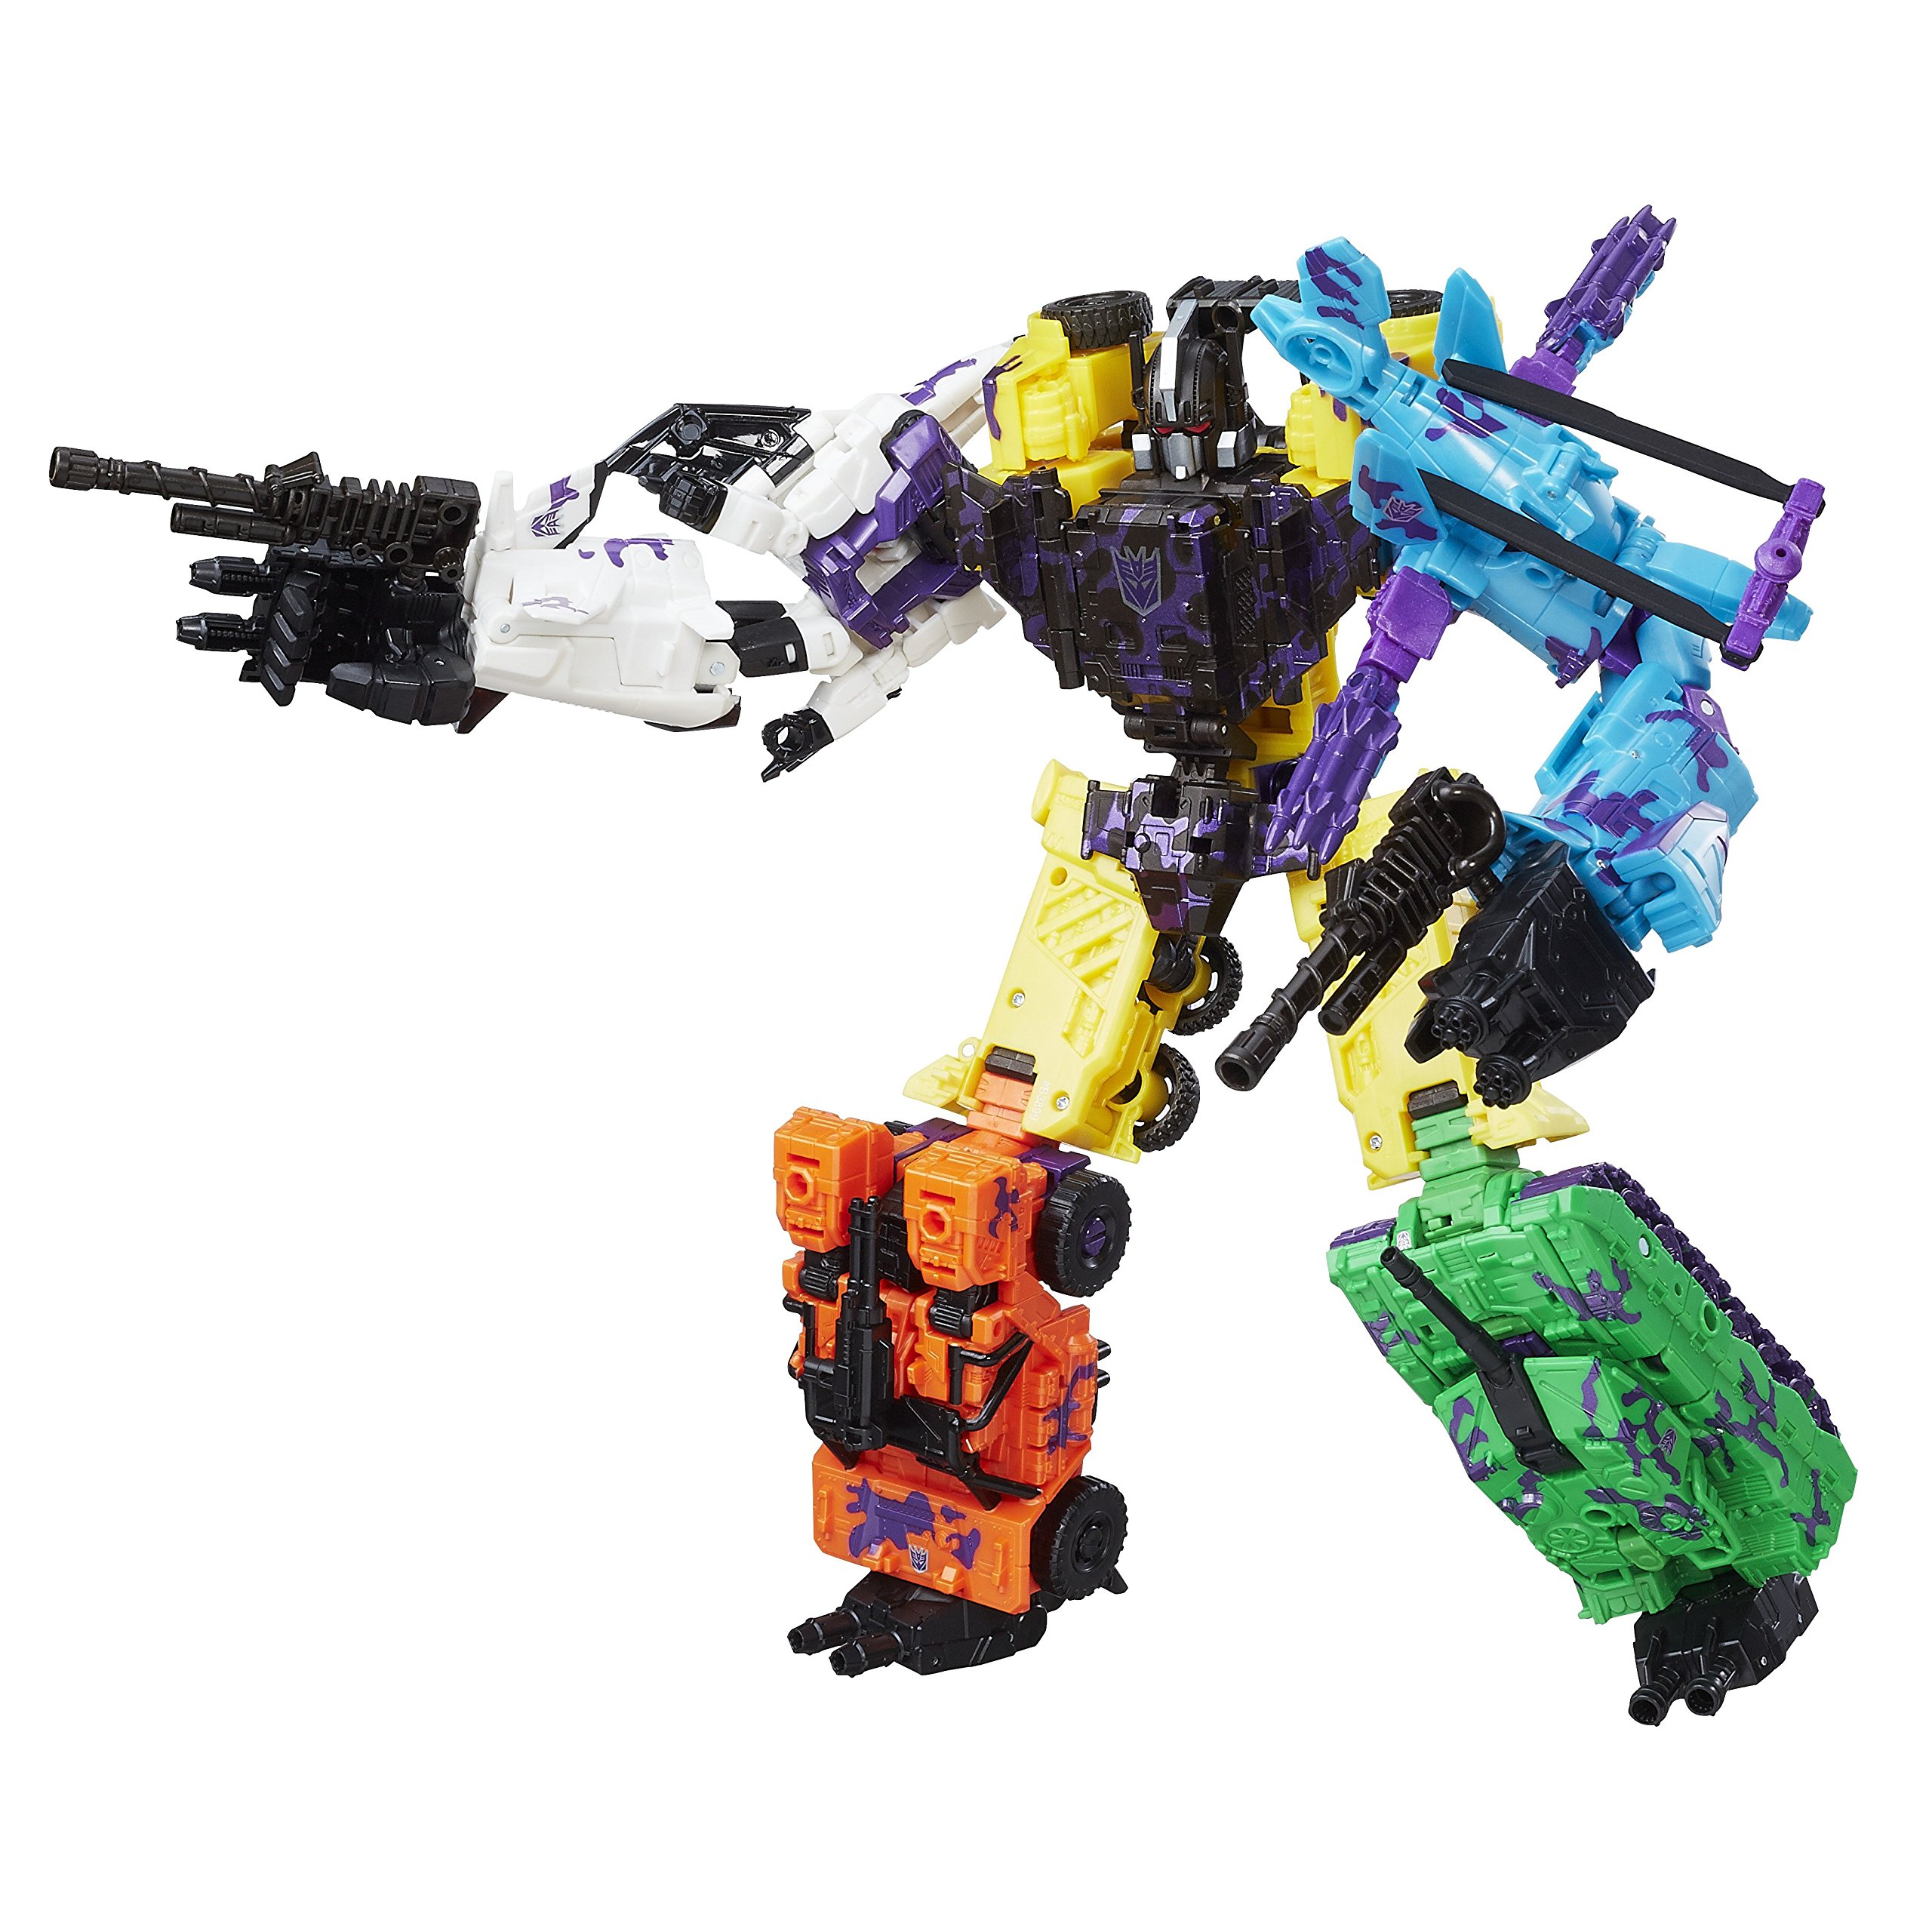 Transformers Generations Combiner Wars Series PK Bruticus Action Figure